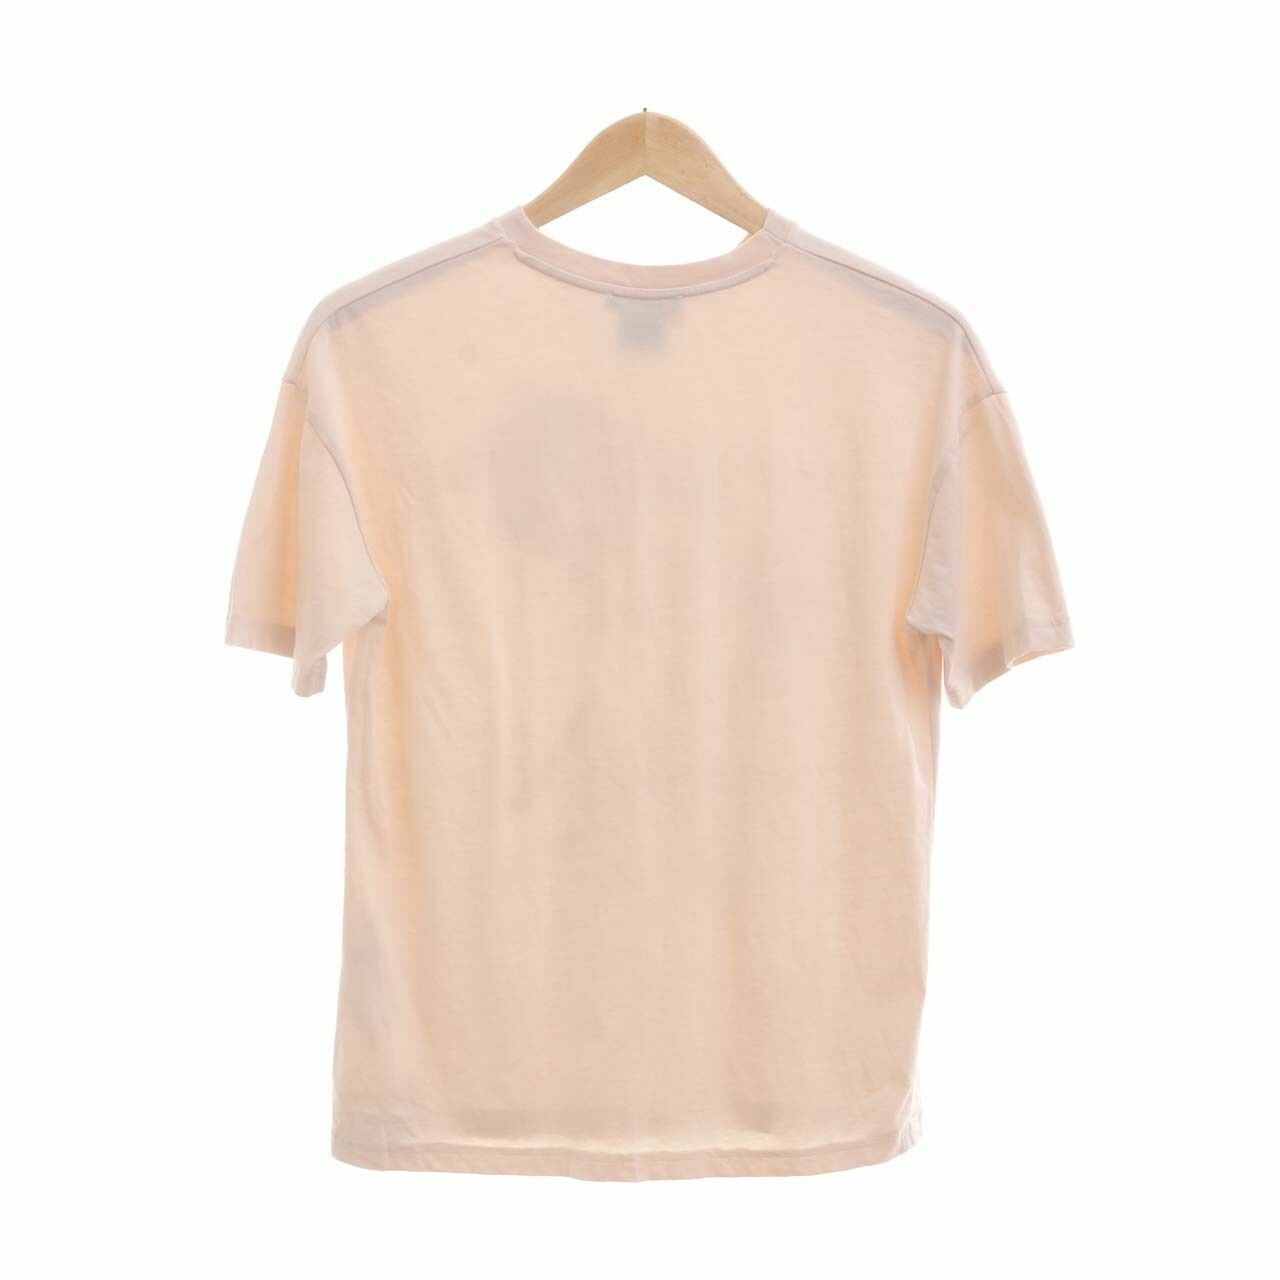 Zara Cream T-Shirt